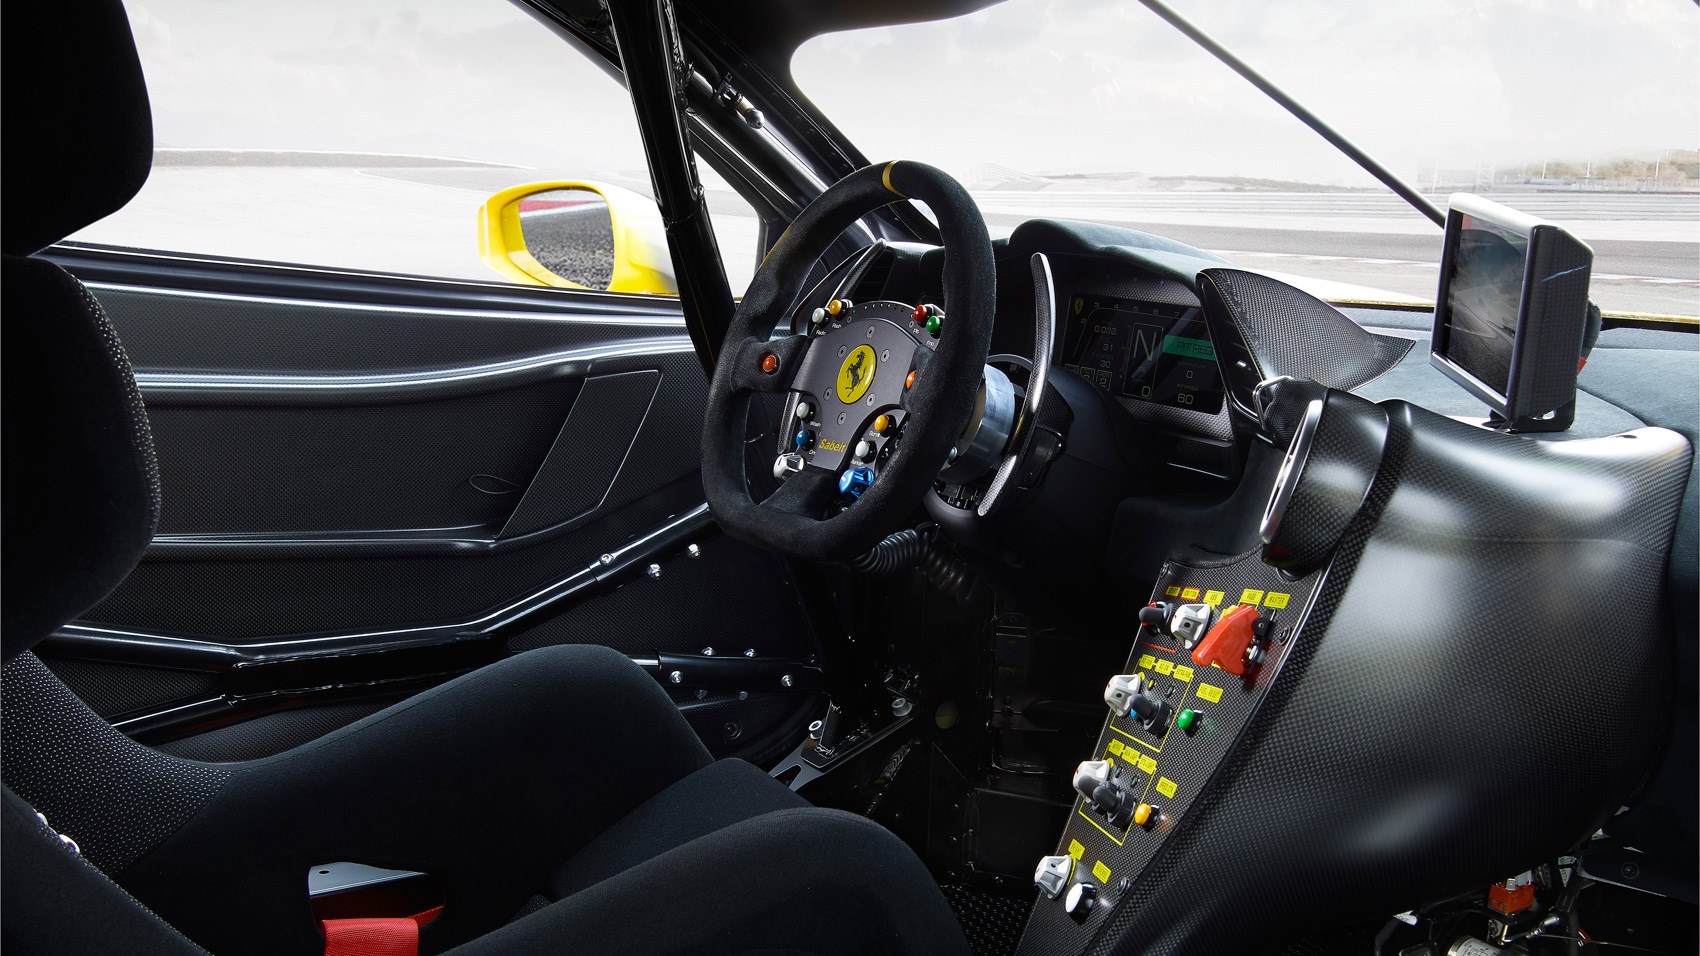 Gallery Ferrari 488 Challenge Racer For 2017 Car Magazine